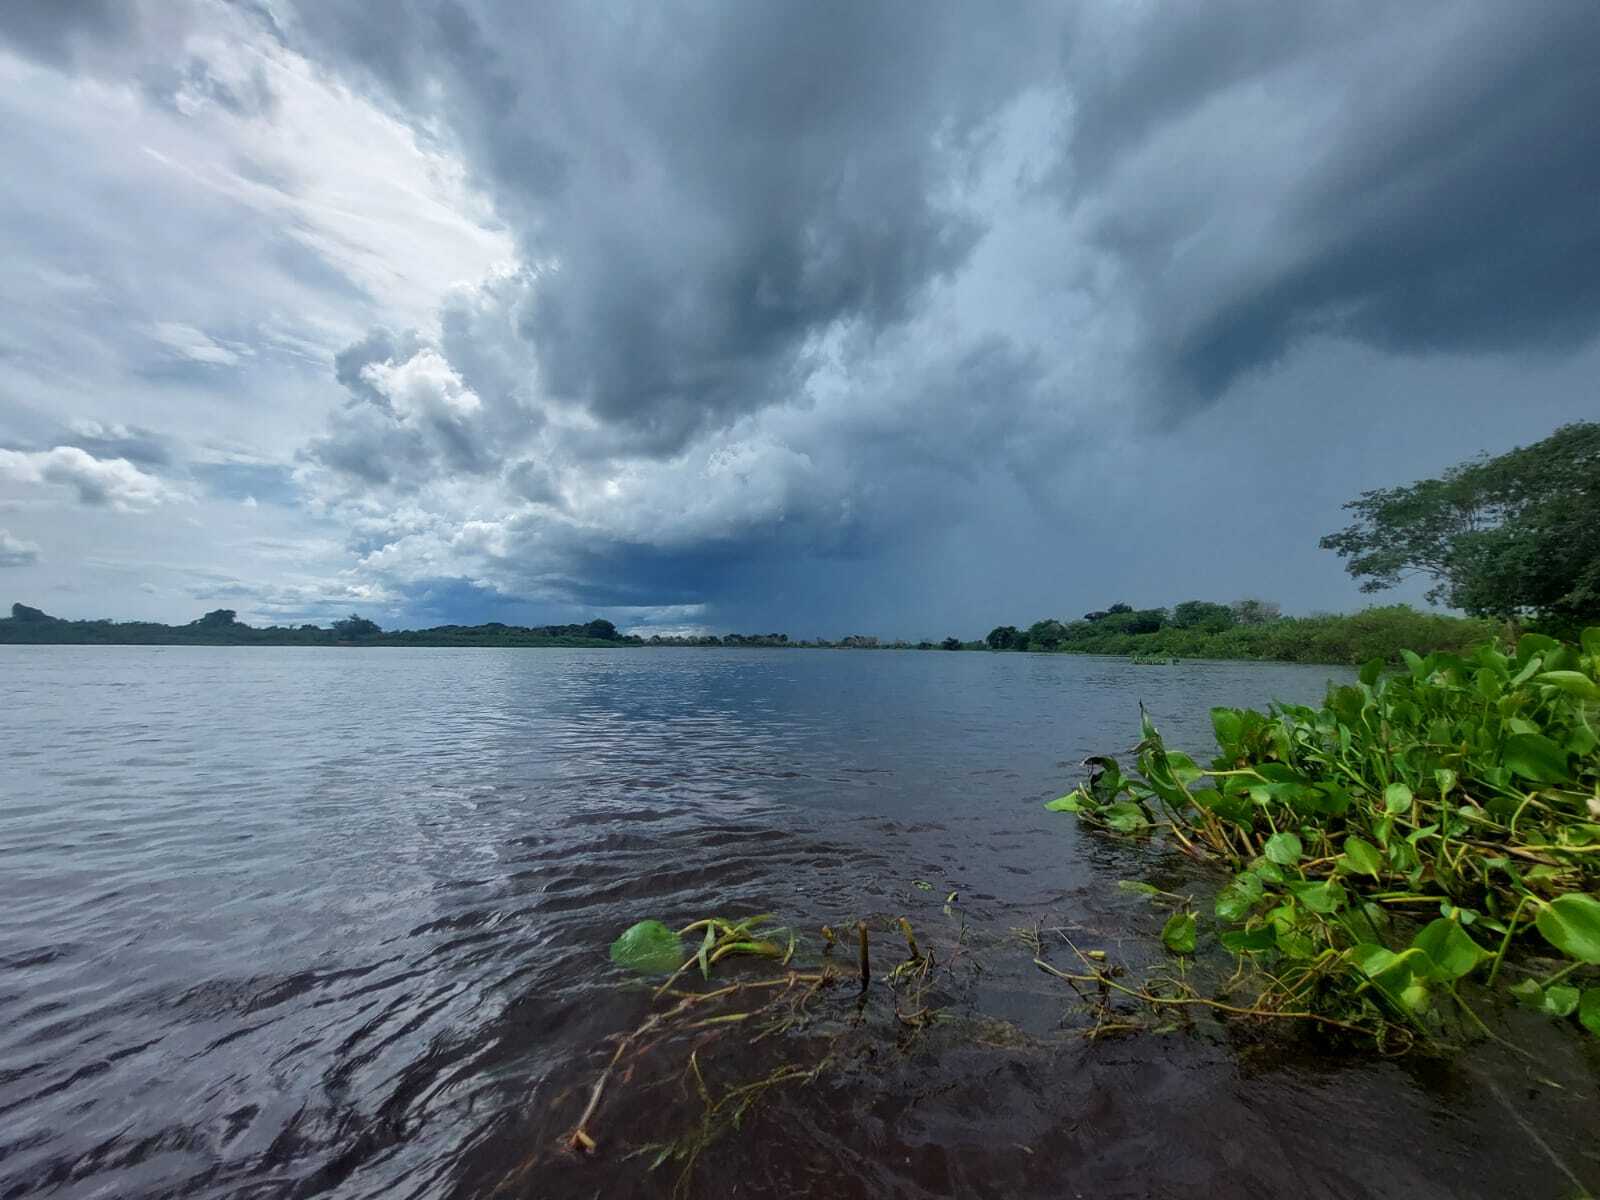 Com 6 focos de incêndio em 15 dias, Pantanal está em alerta para chuvas